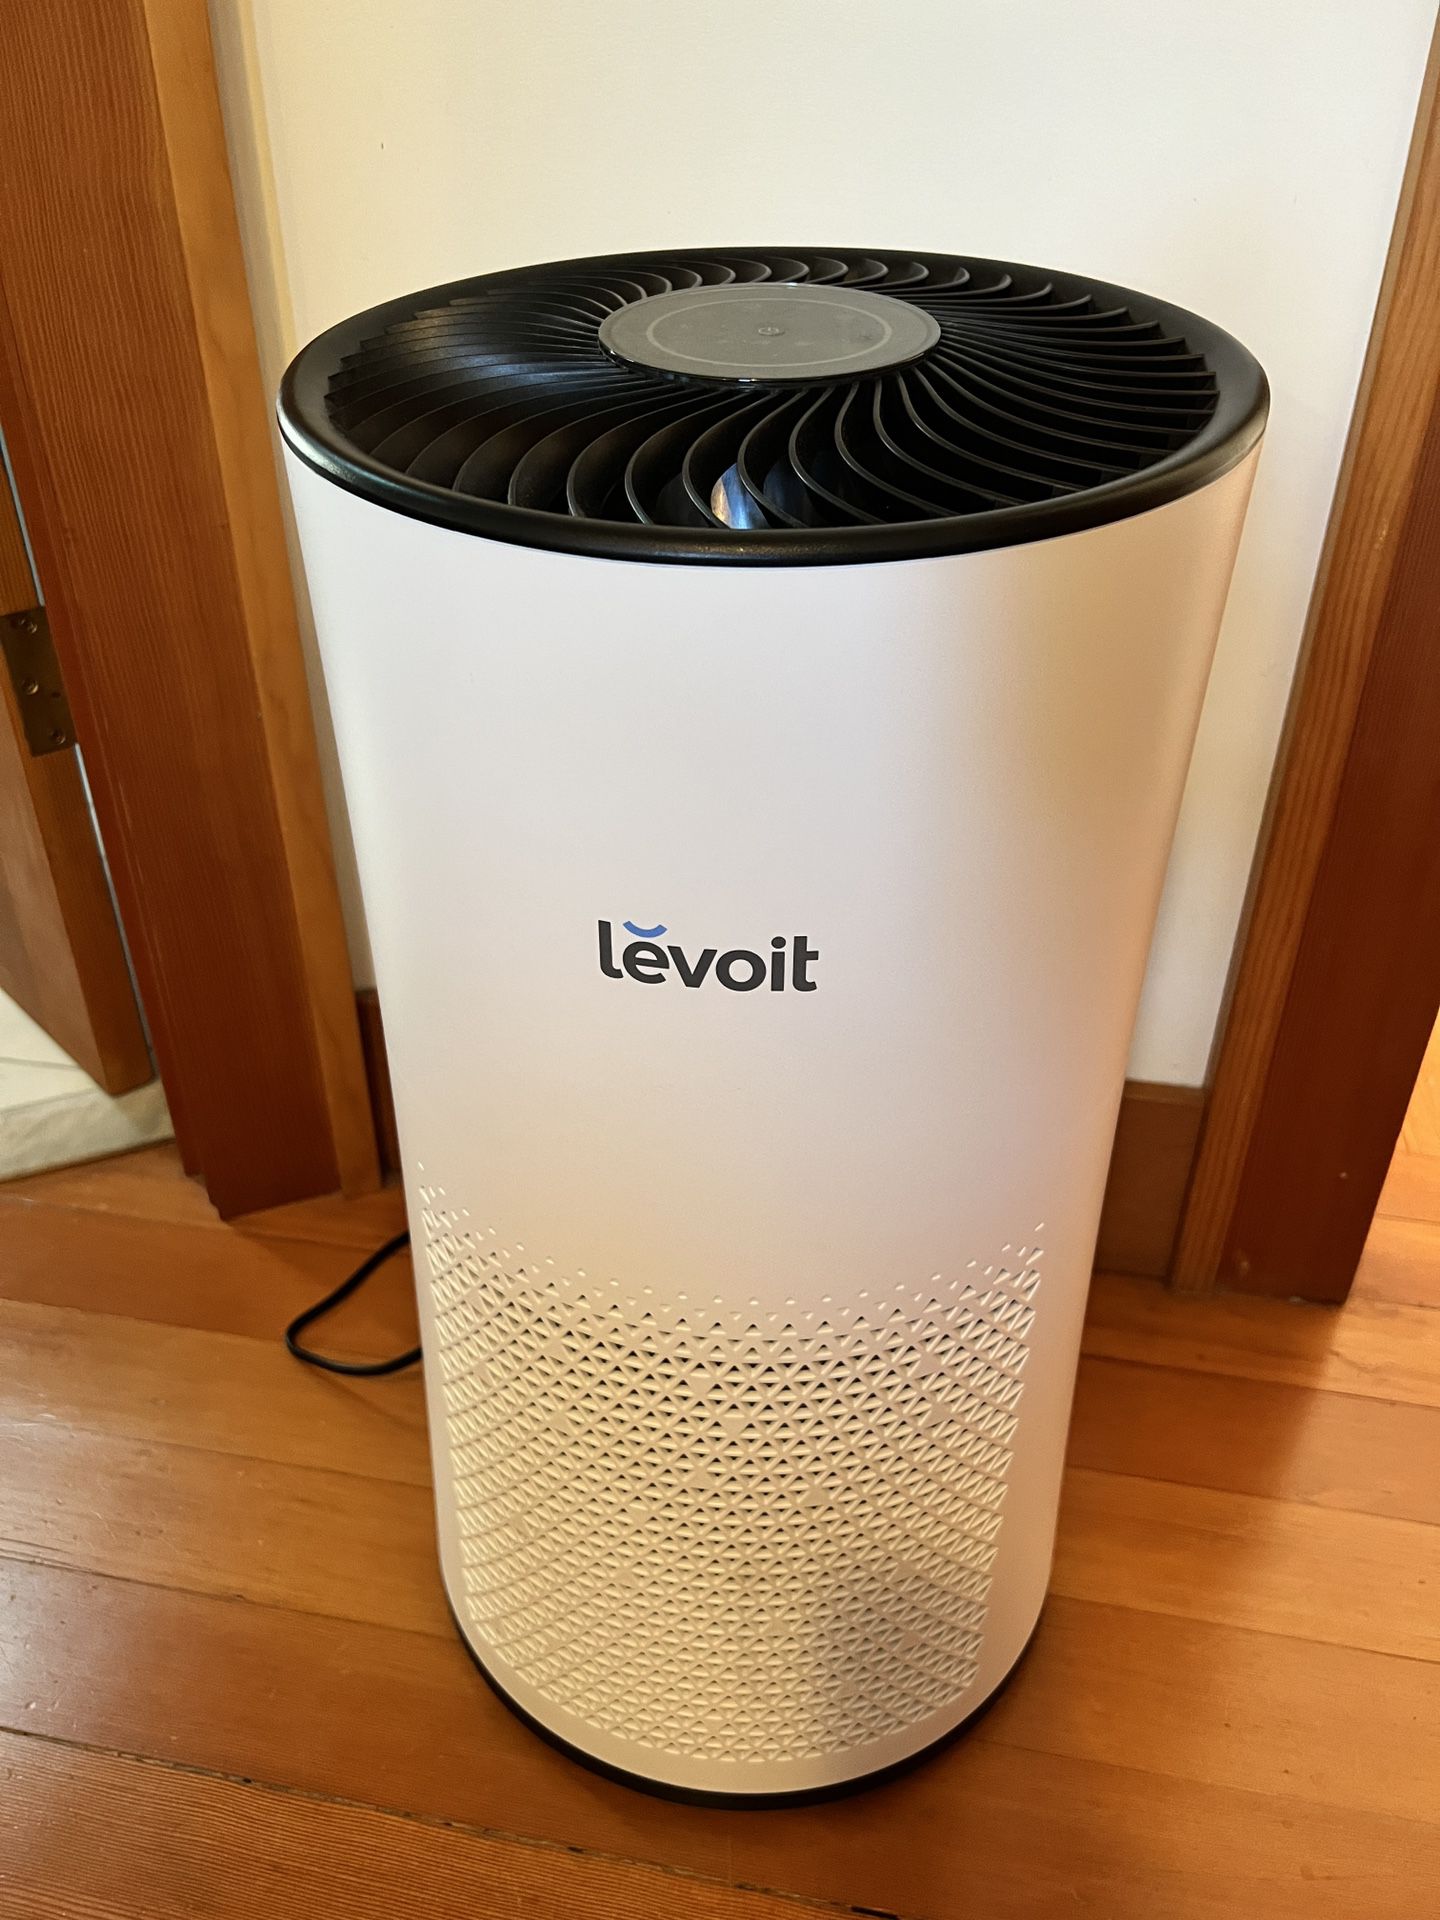 Levoit LV-H133 H13 True HEPA Filter air purifier